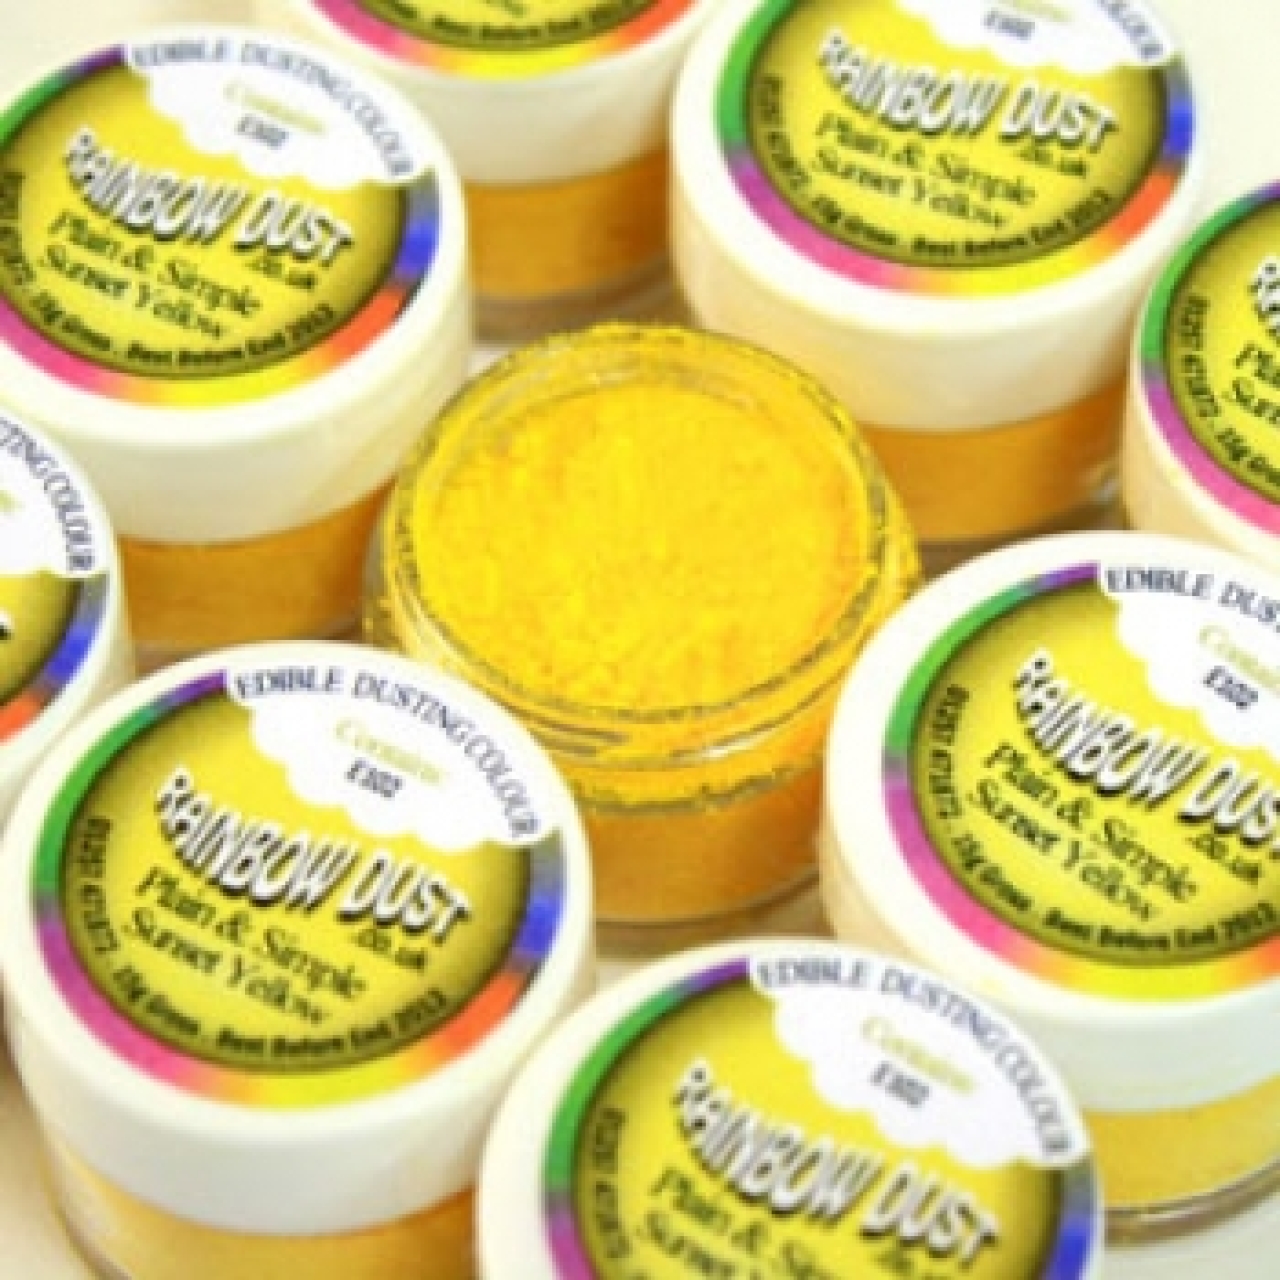 Lebensmittelfarbe Pulver "Sonnengelb", gelb, 2 g